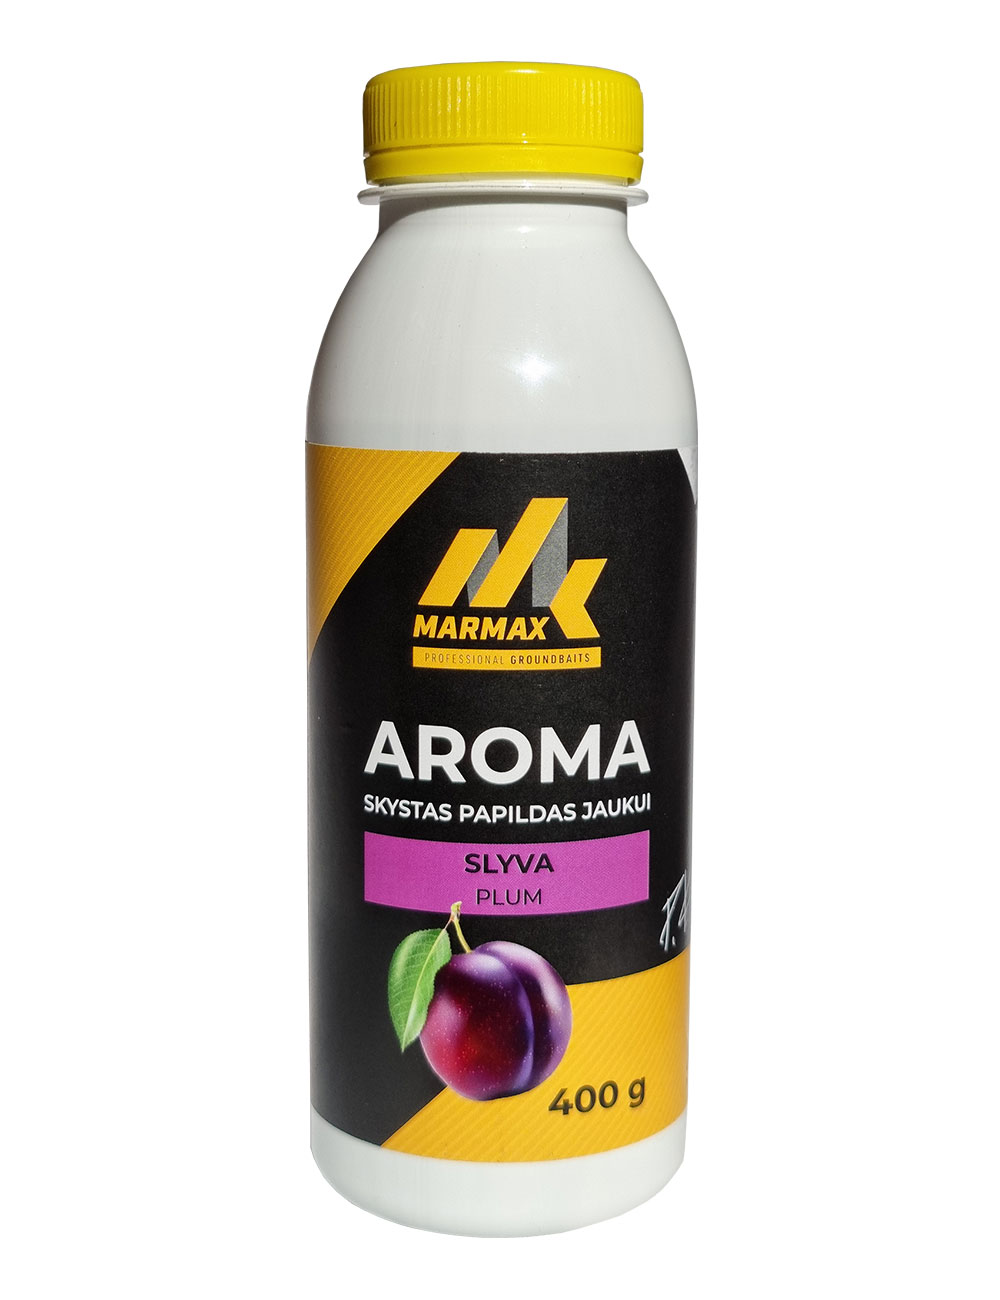 Aroma - Slyva (400g)